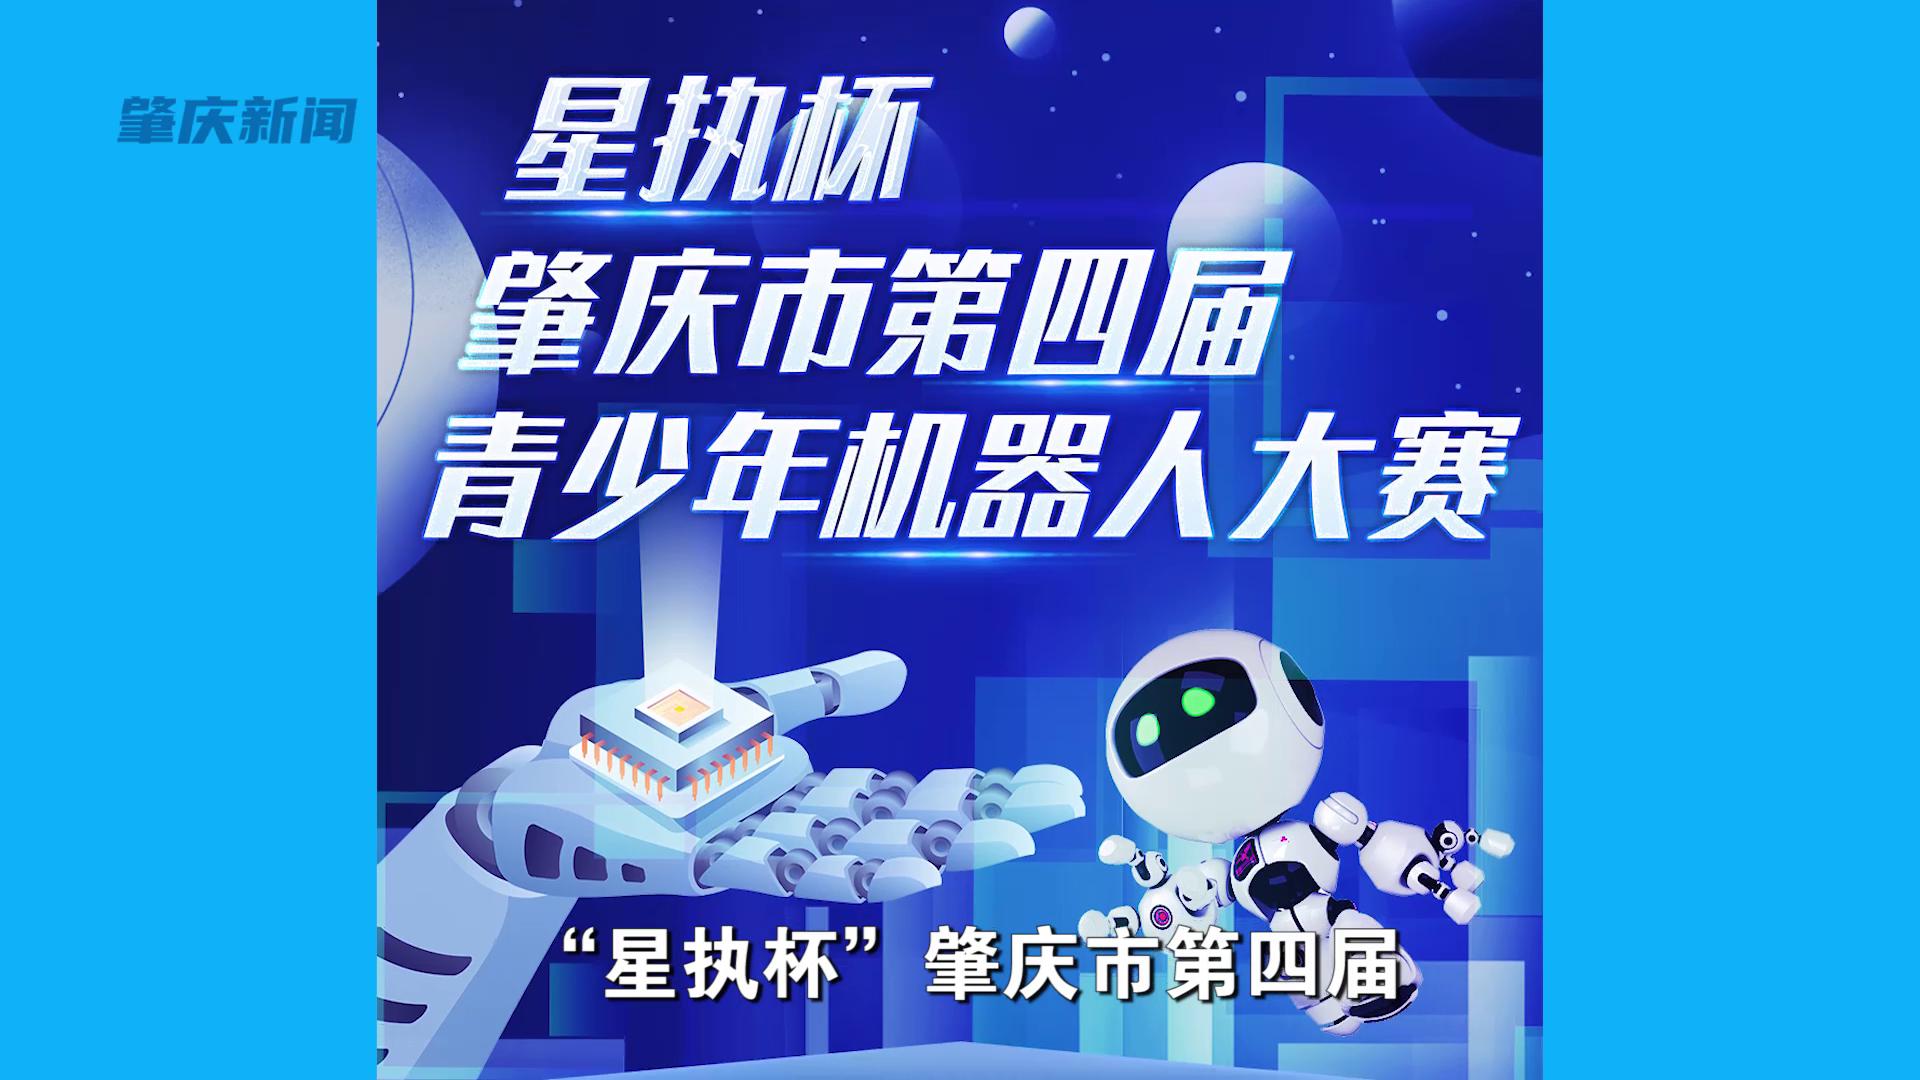 备战“星执杯”肇庆市第四届青少年机器人大赛